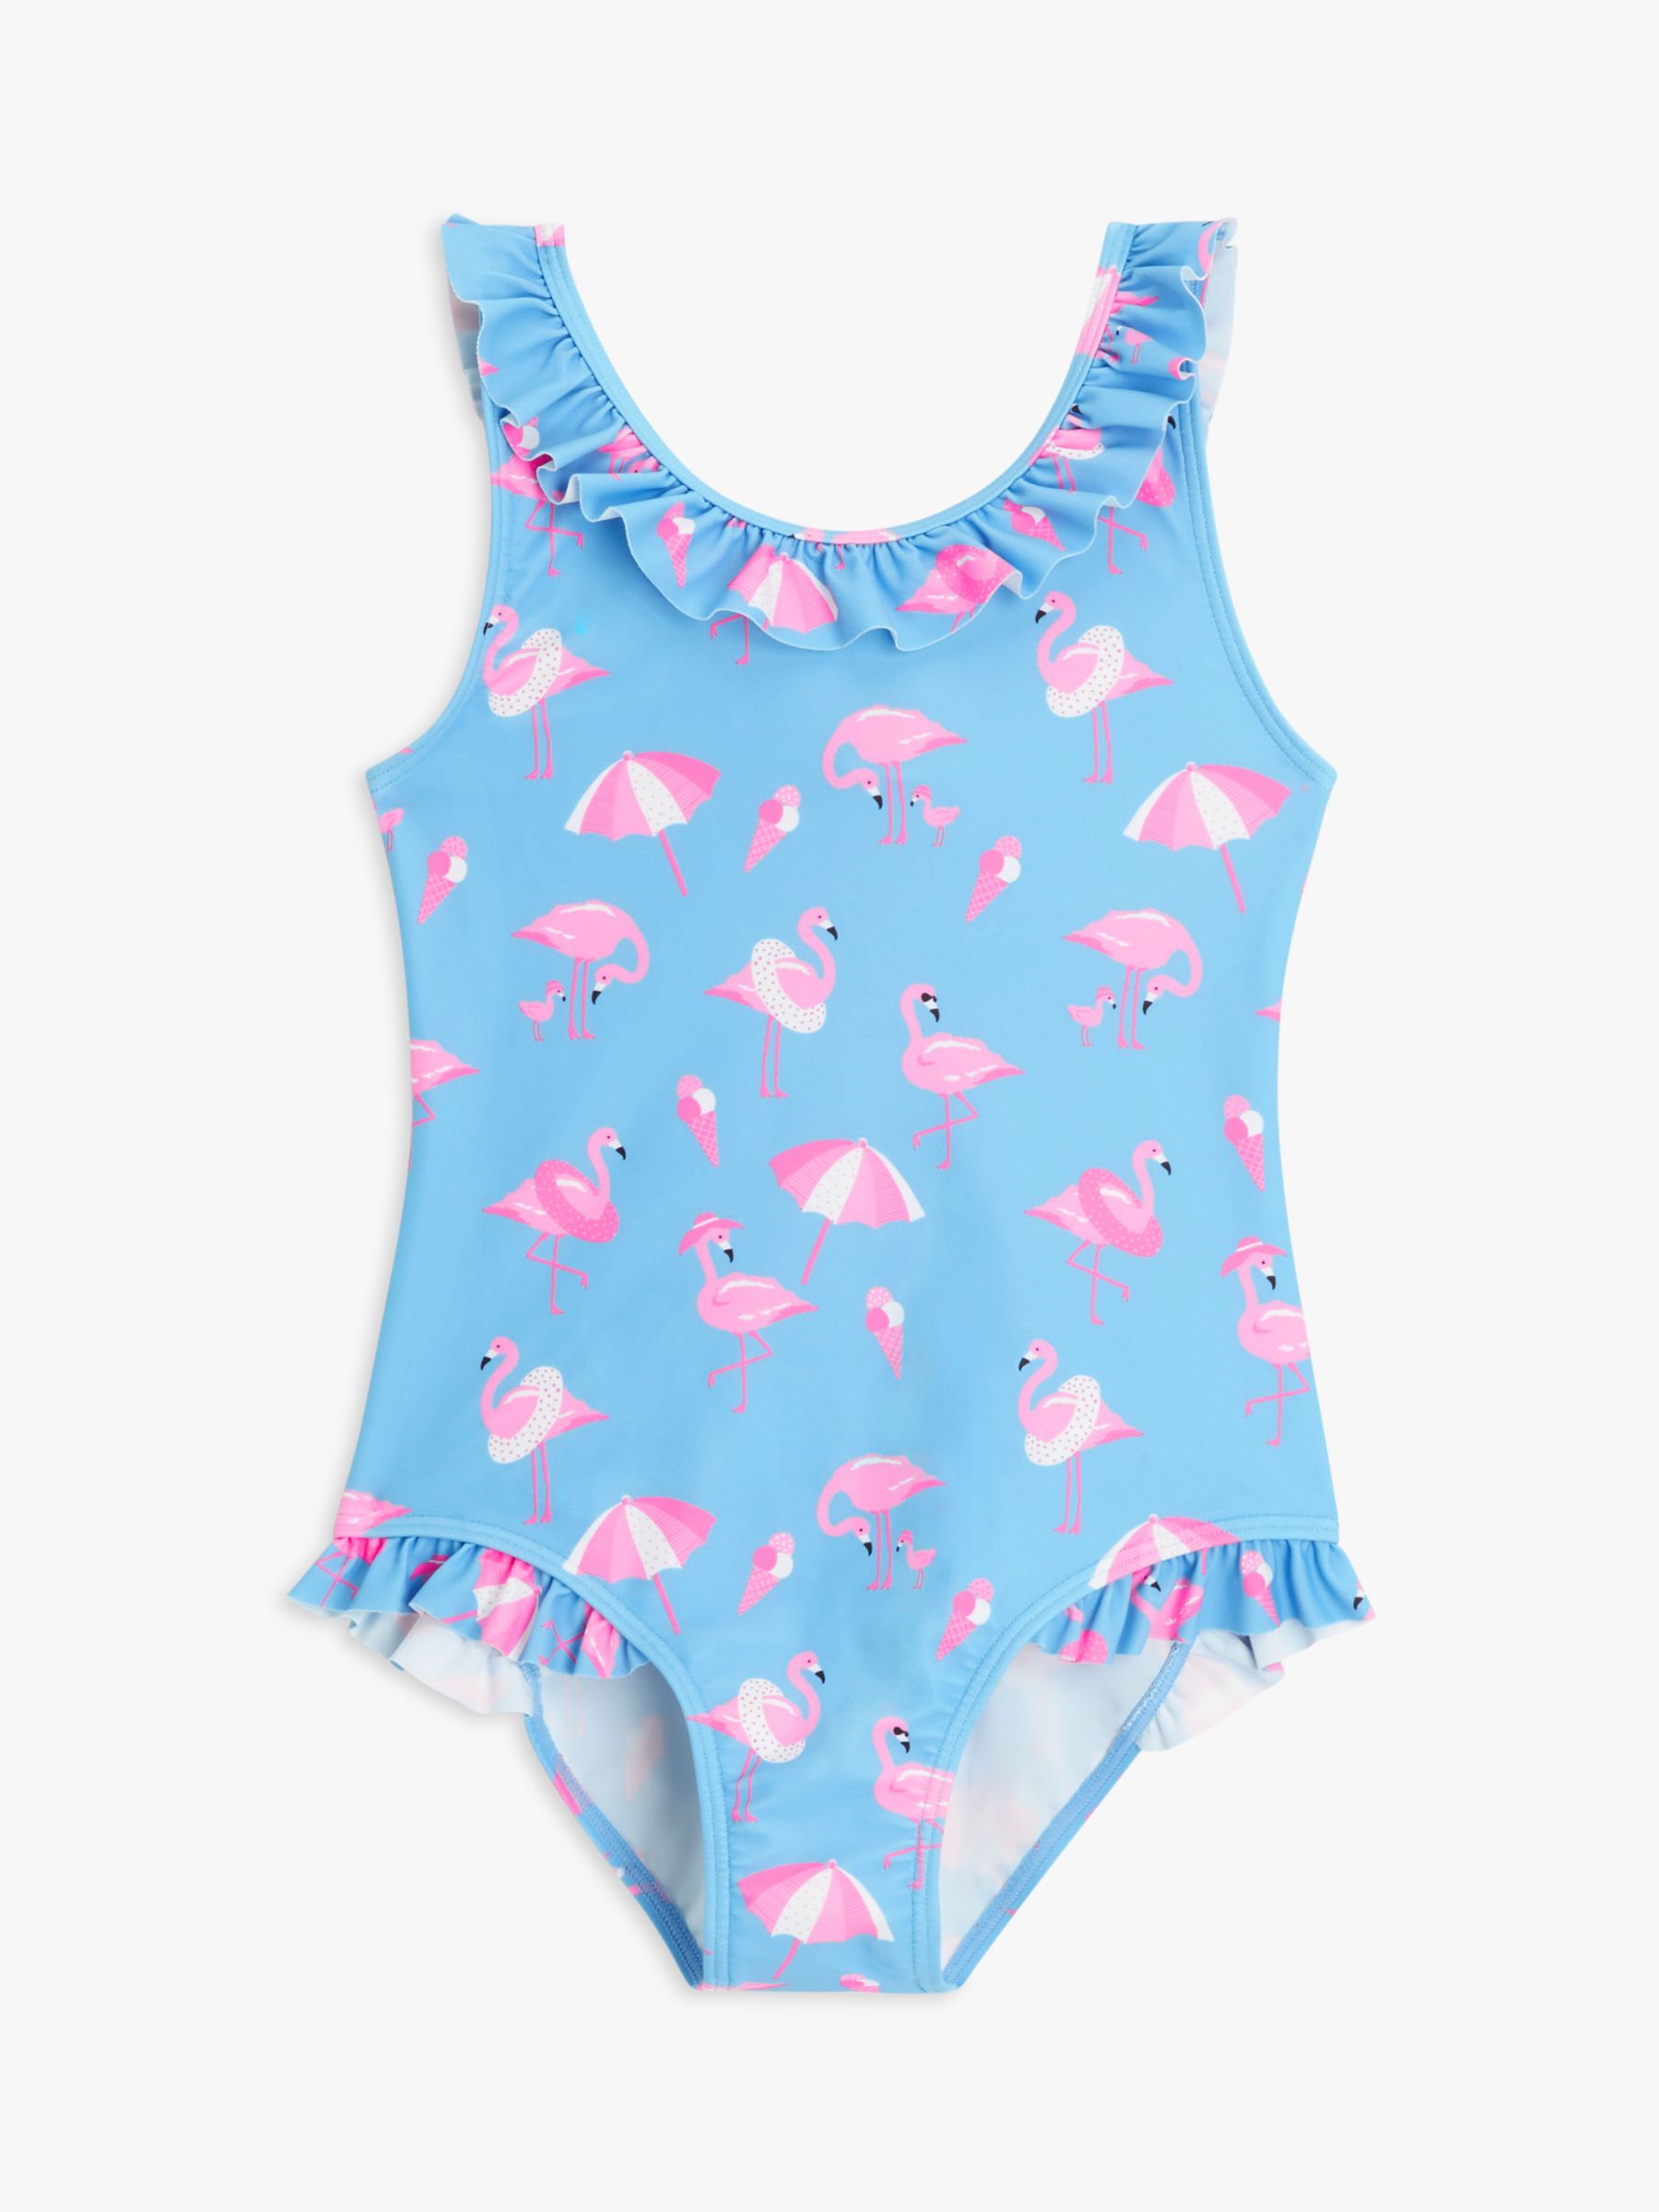 John Lewis Kids' Fun Flamingo Swimsuit, Blue/Pink at John Lewis & Partners